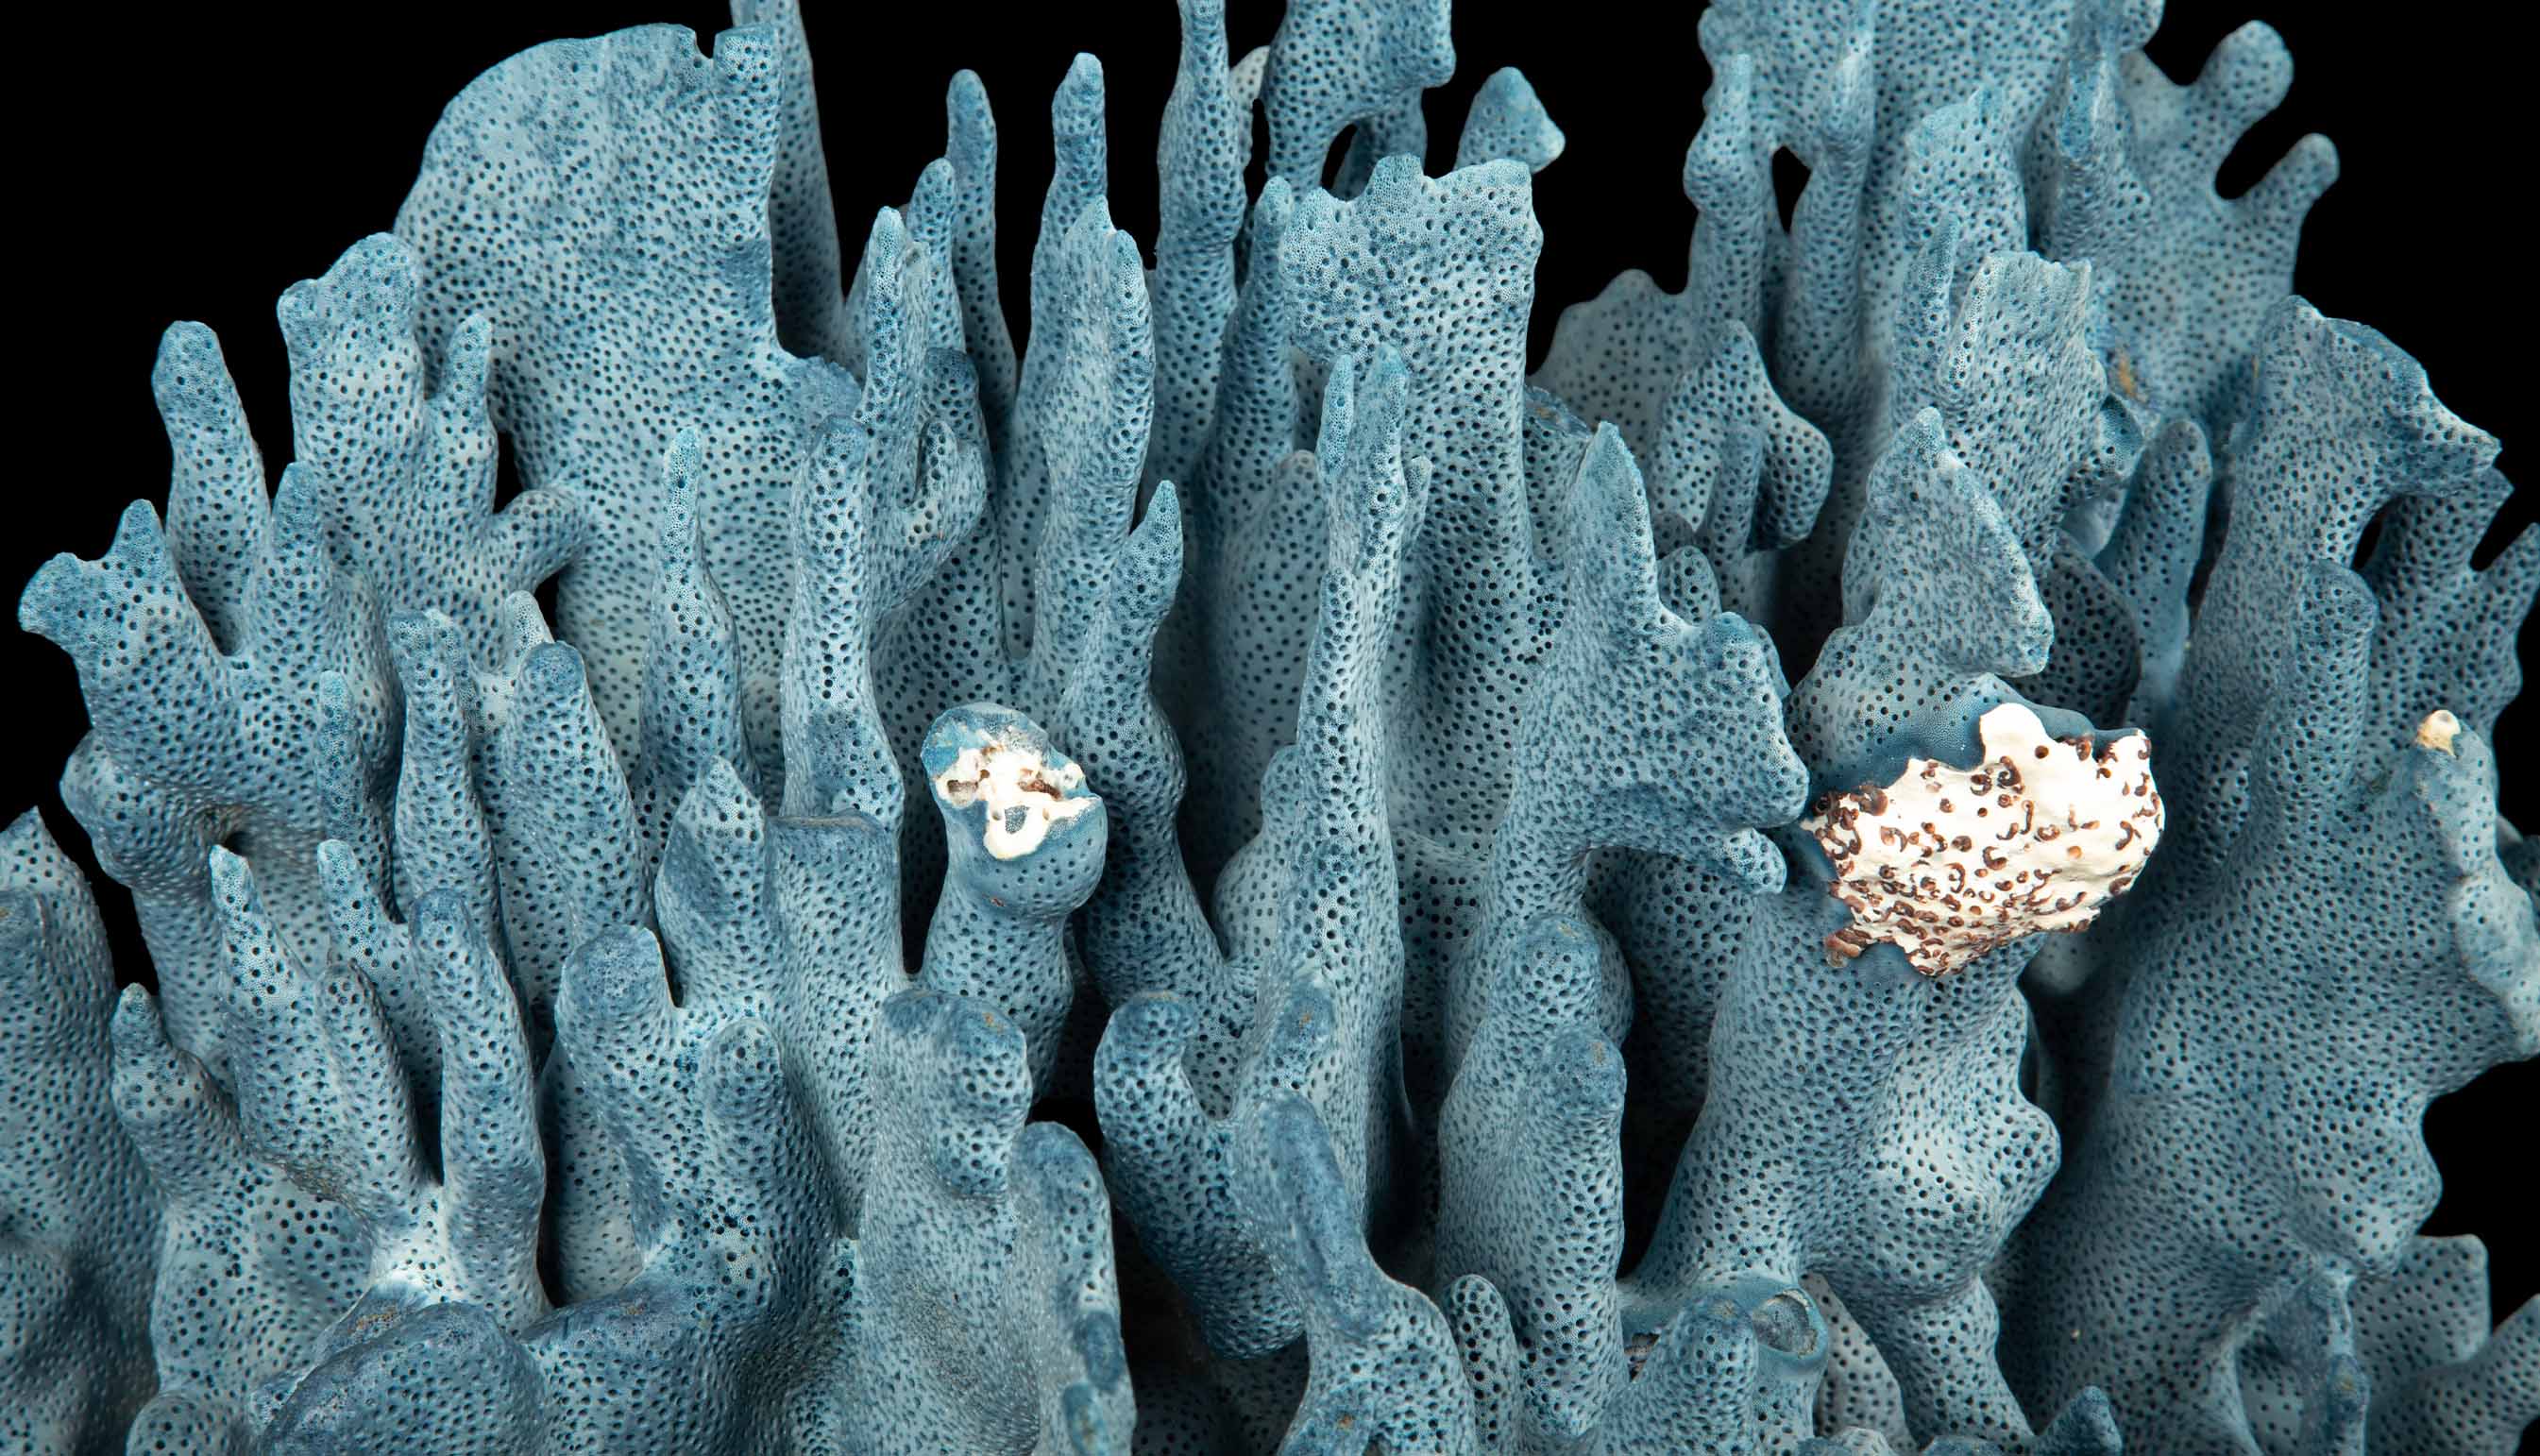 Large Natural Blue Coral Specimen